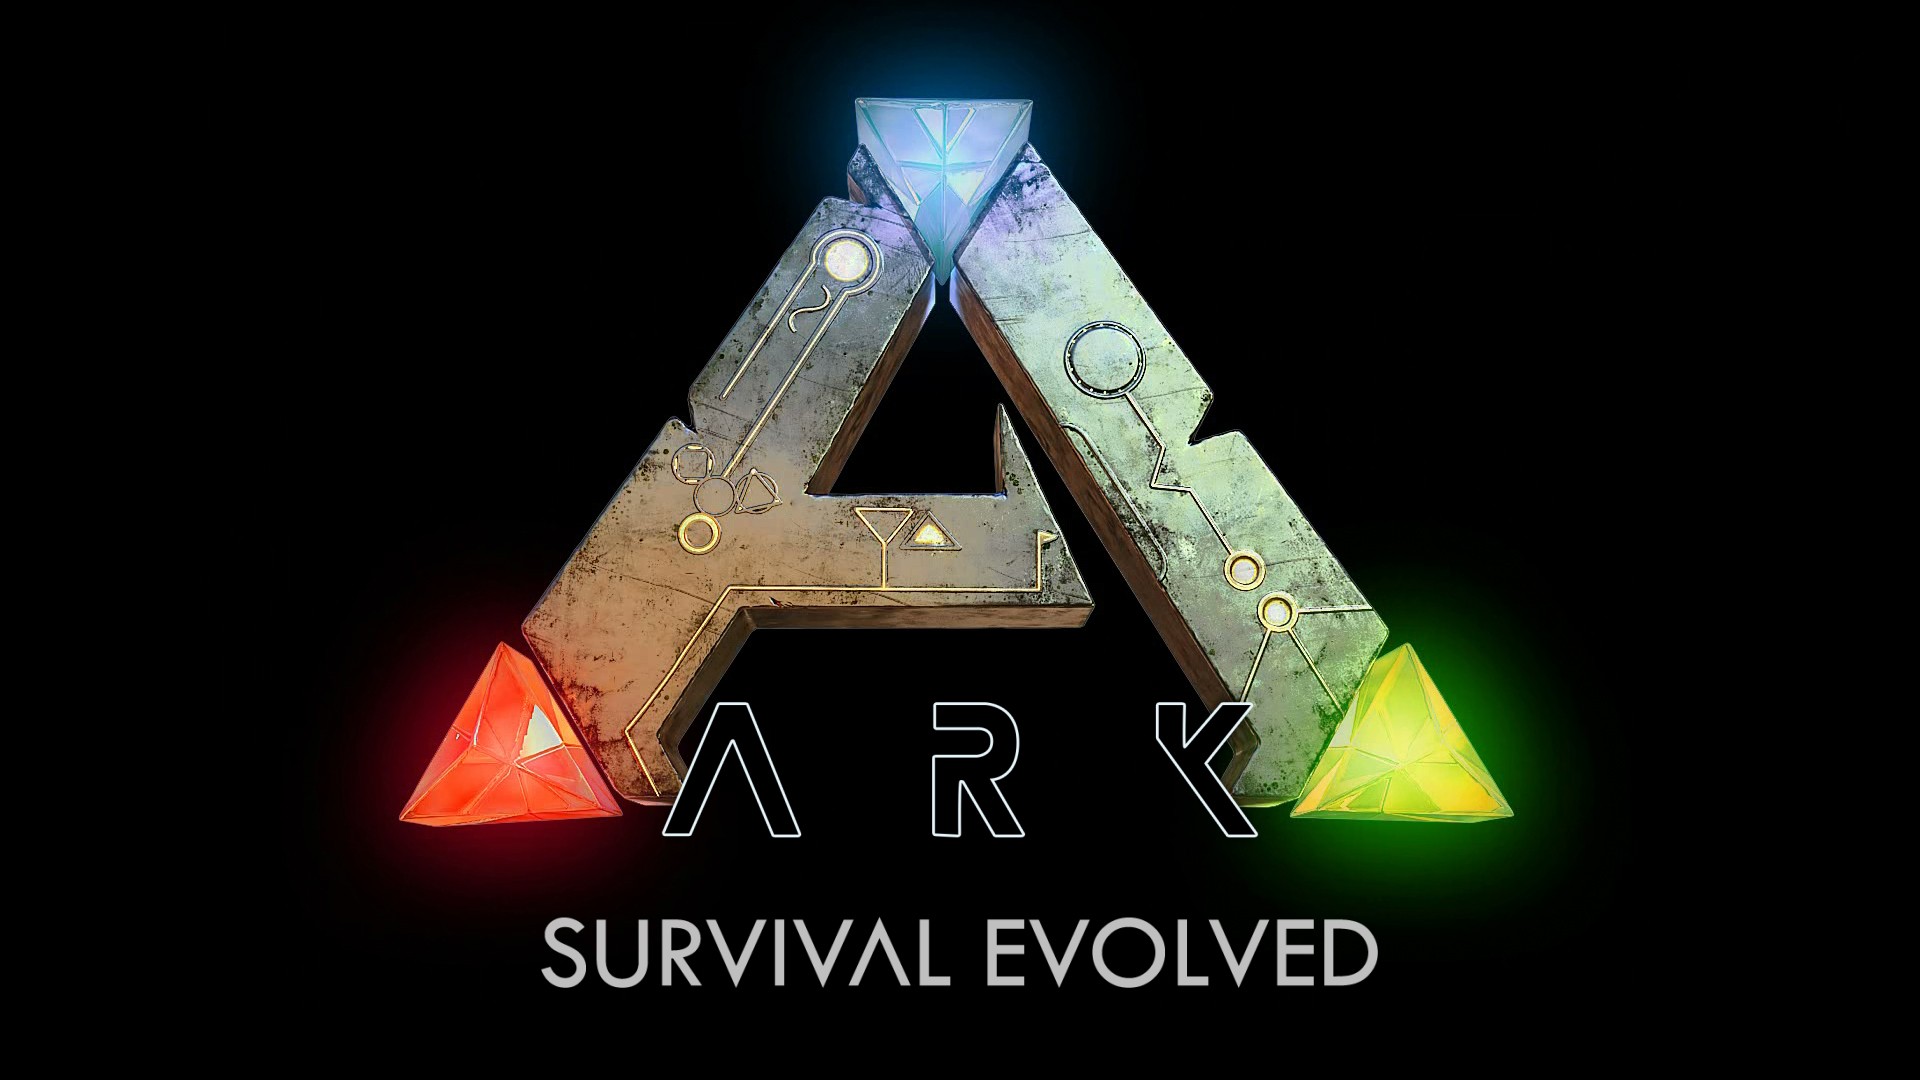 ark_survival_evolved_logo